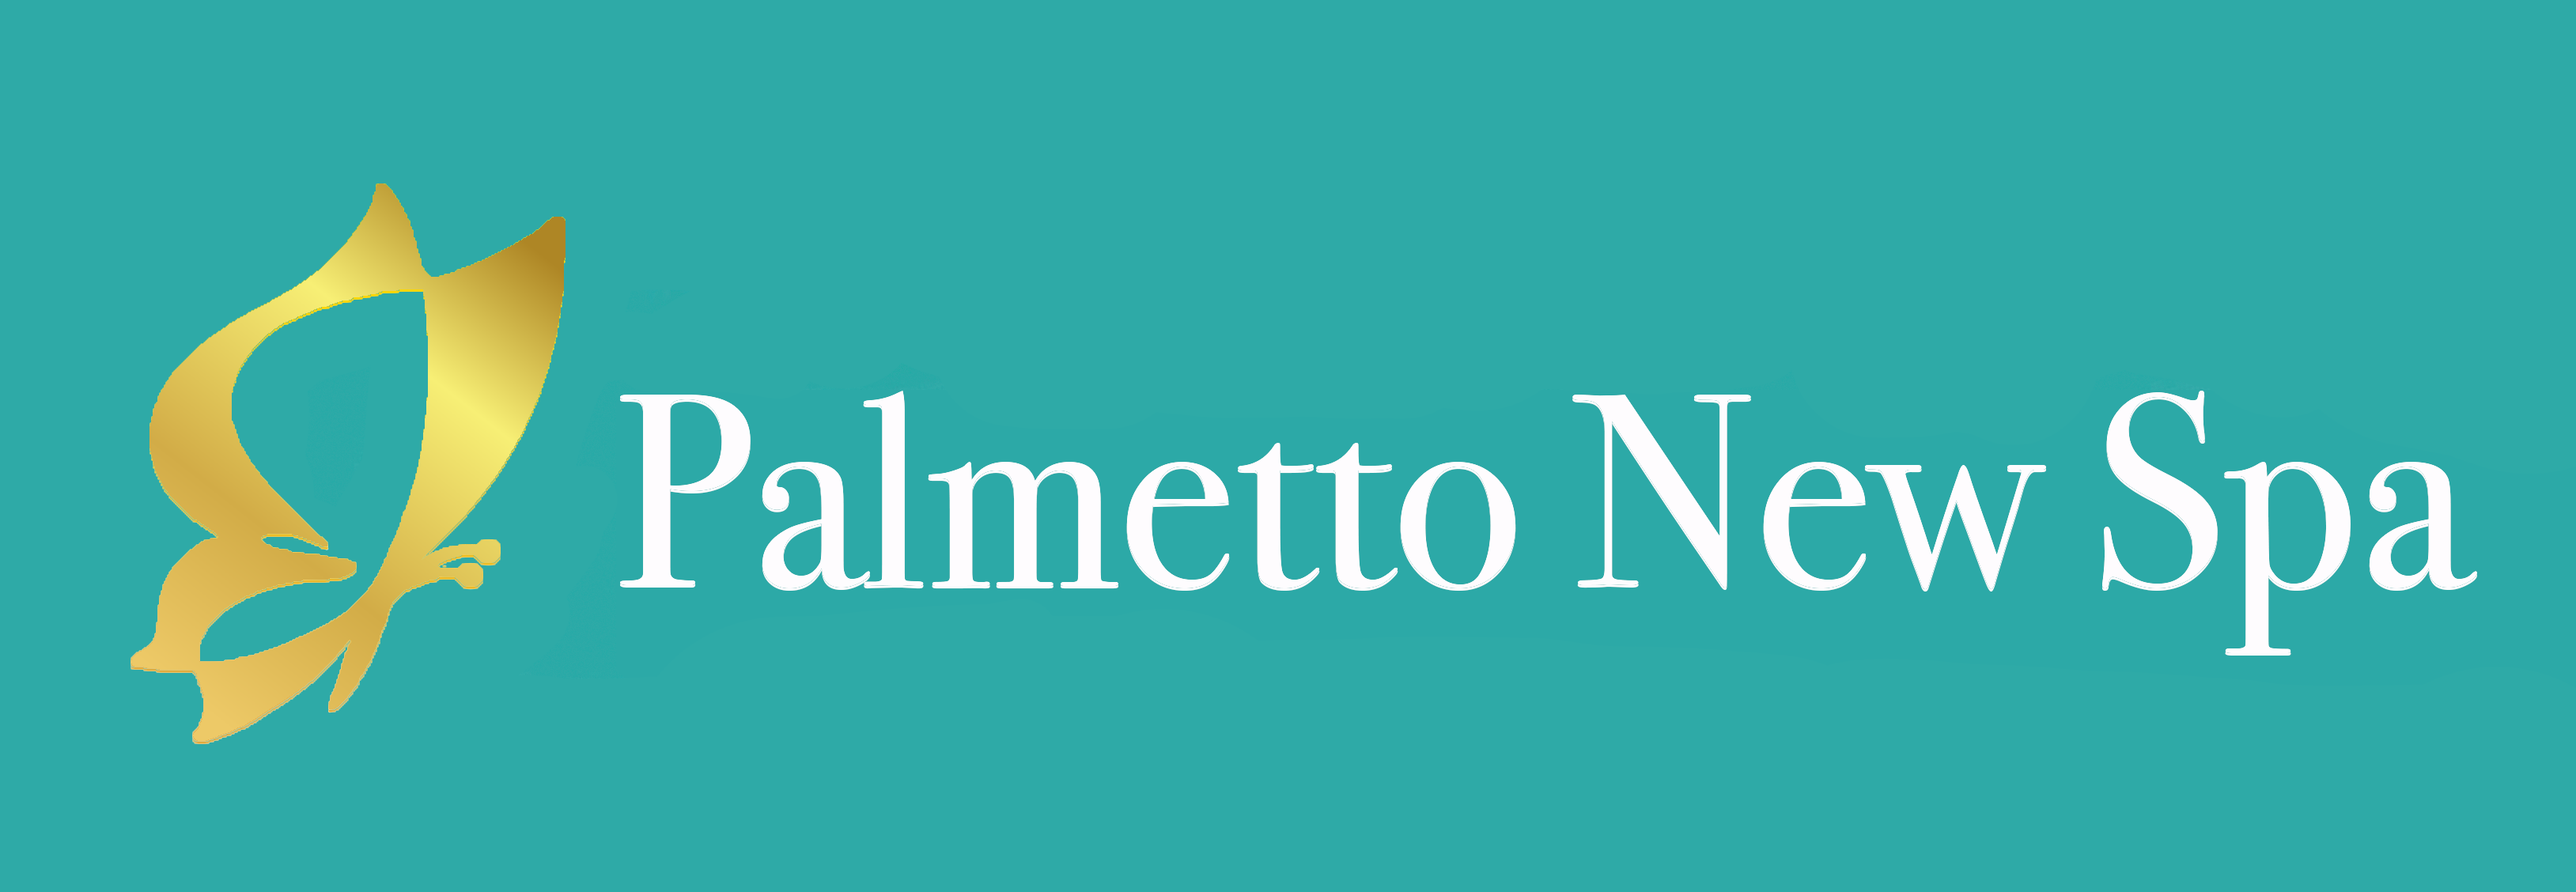 Palmetto New Spa